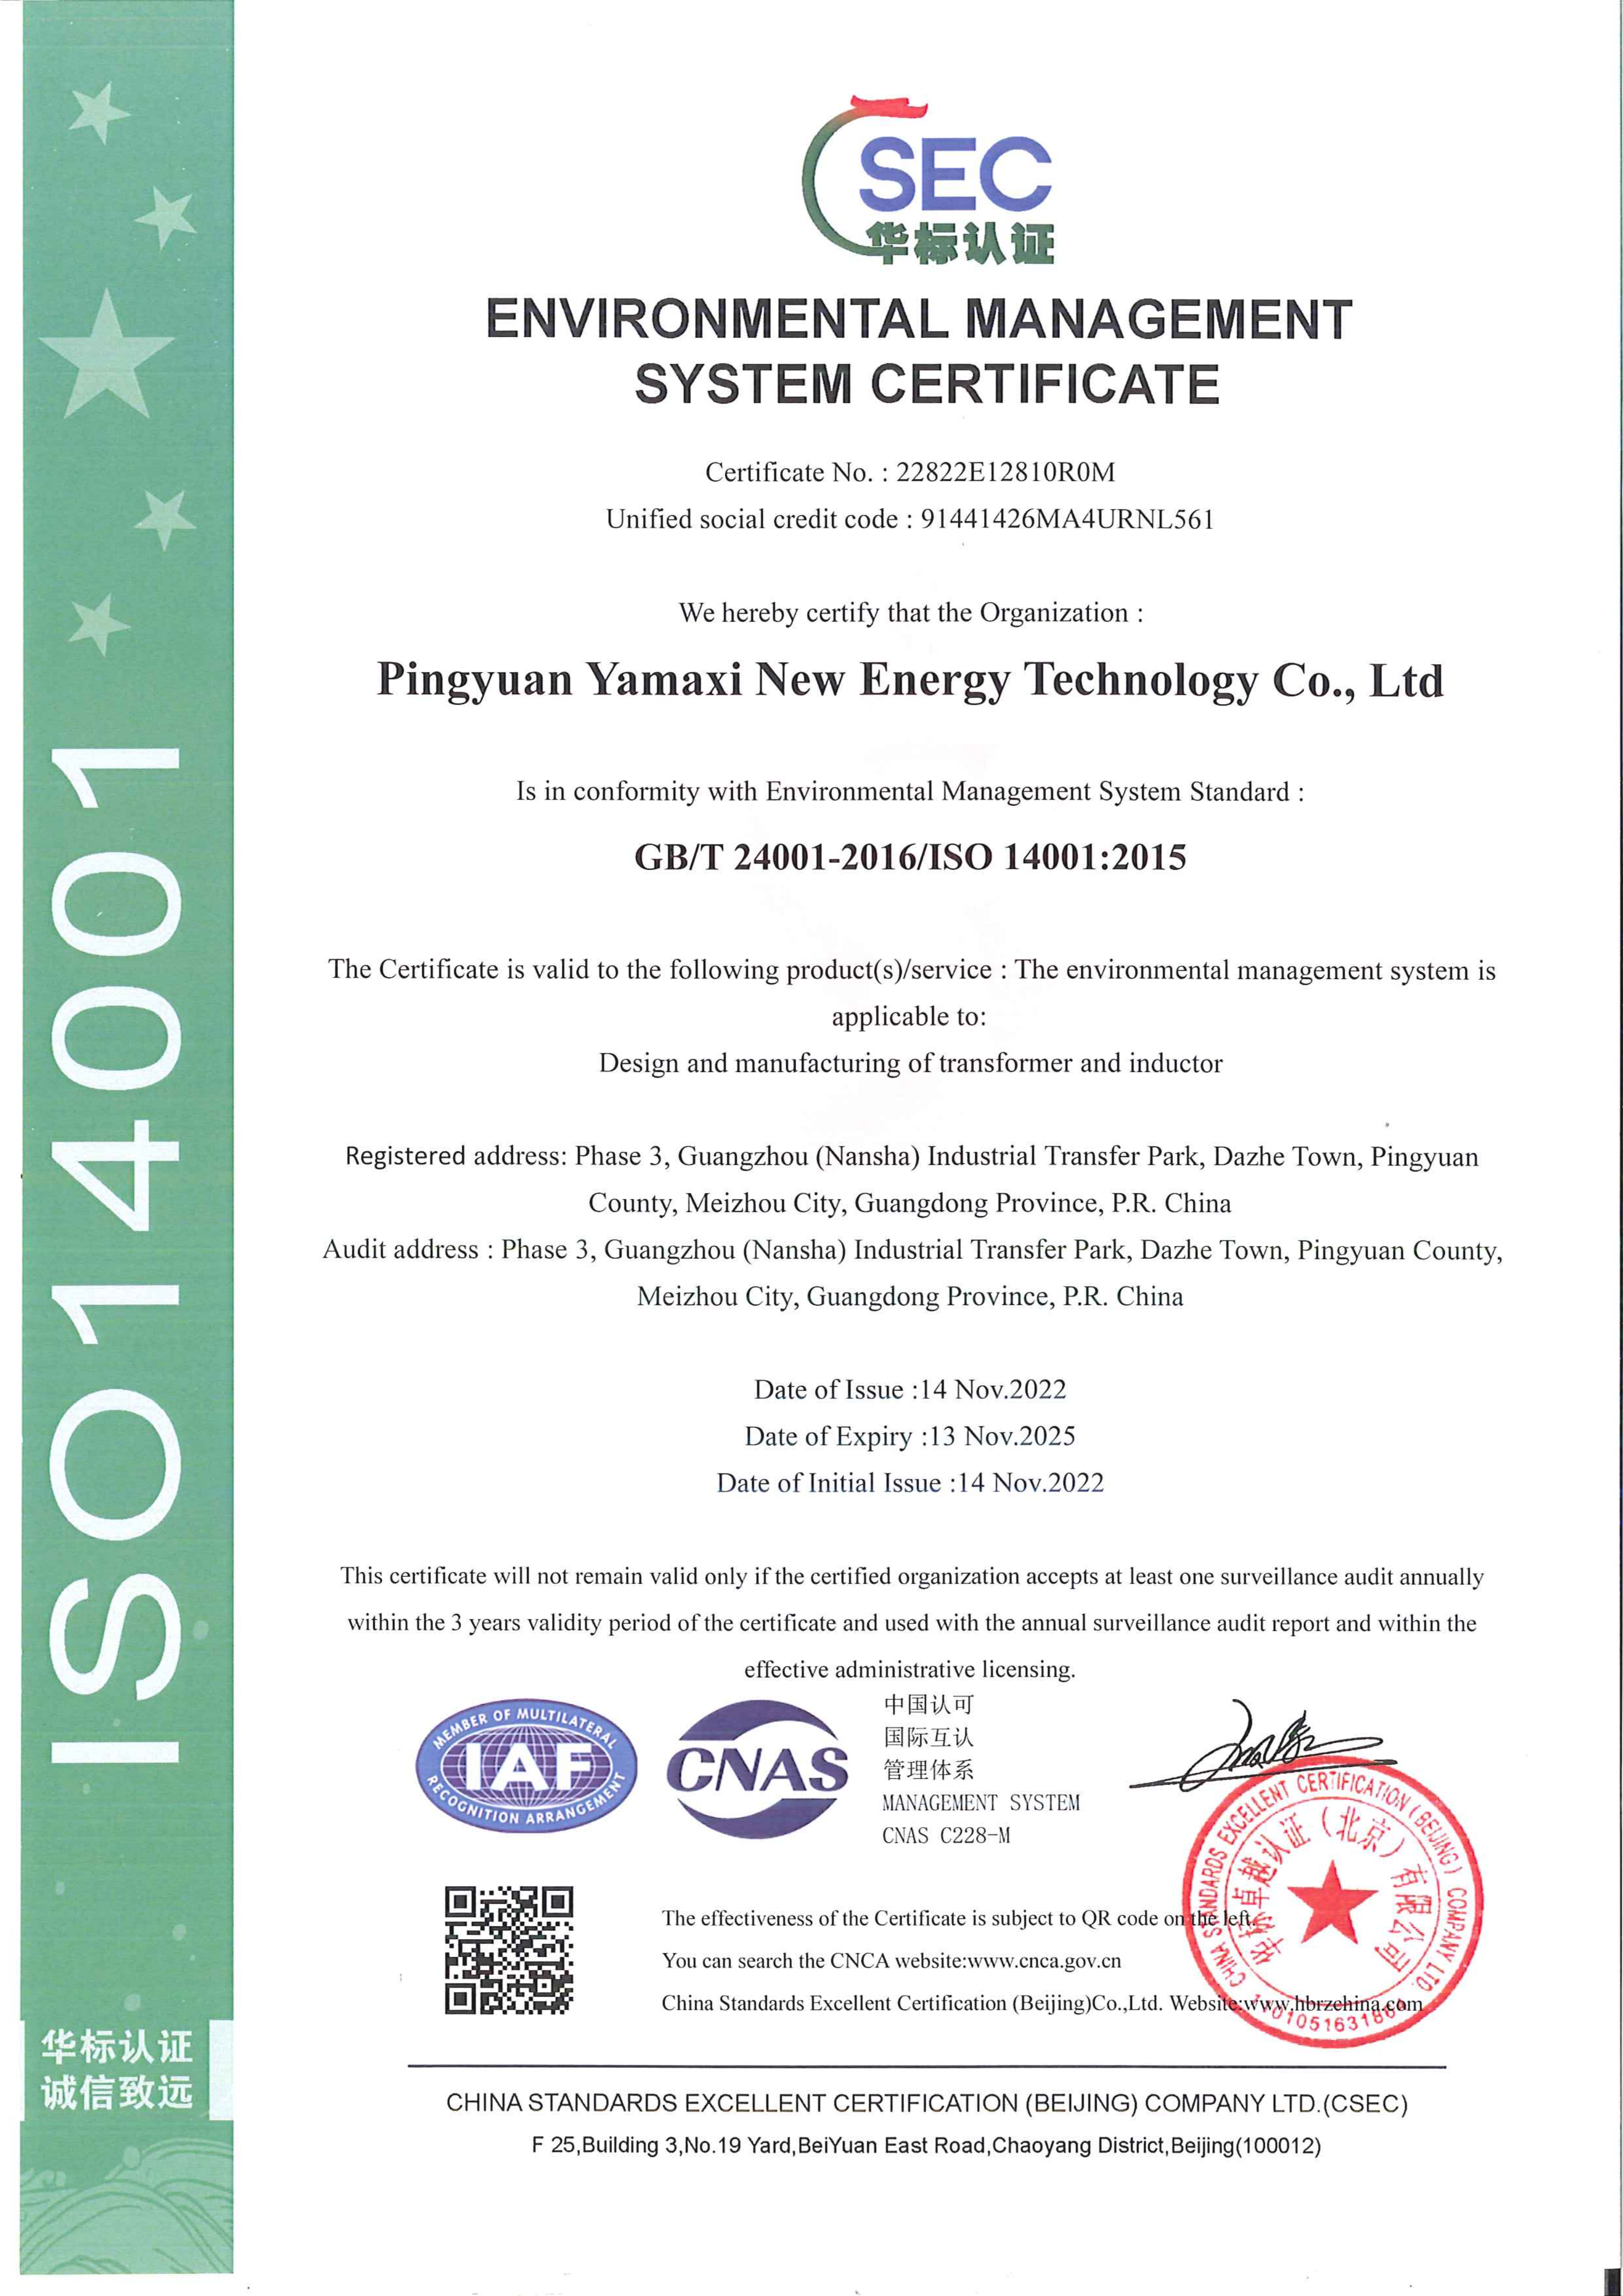 5.1 新能源-ISO14001证书--英文 2022.12.05_00